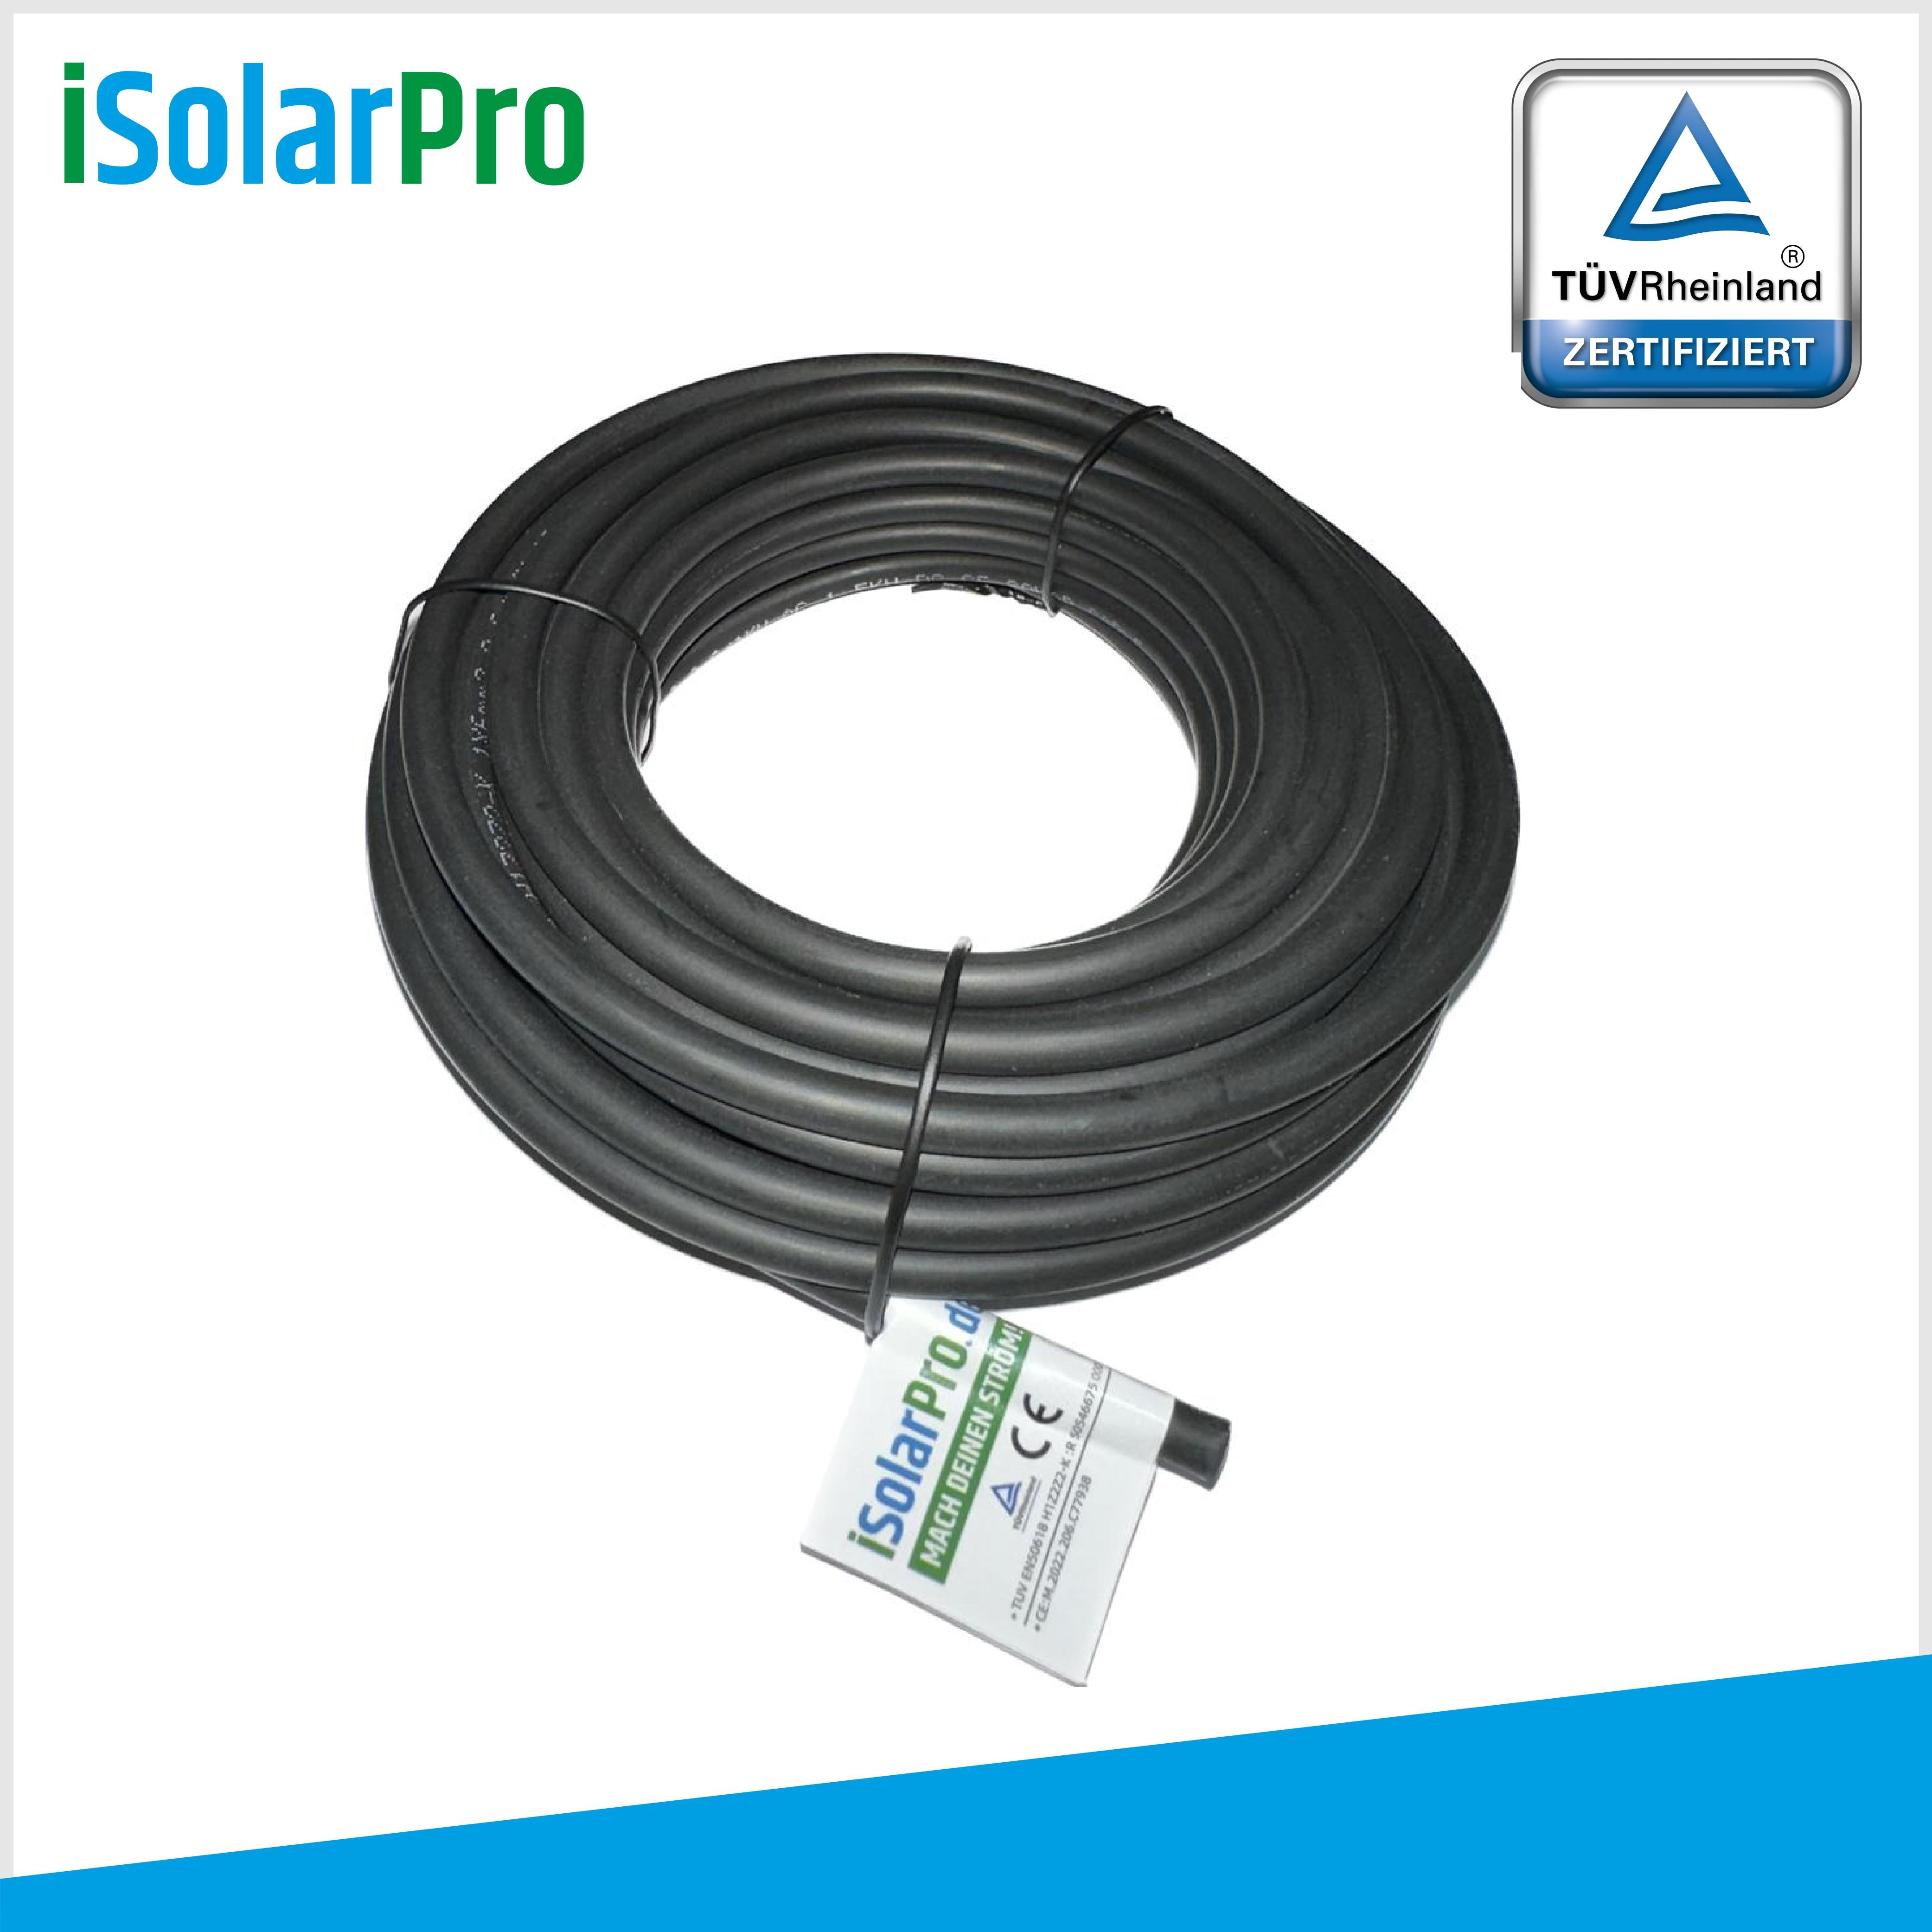 10m Solarkabel 4 mm² Photovoltaik Kabel für PV Anlagen schwarz